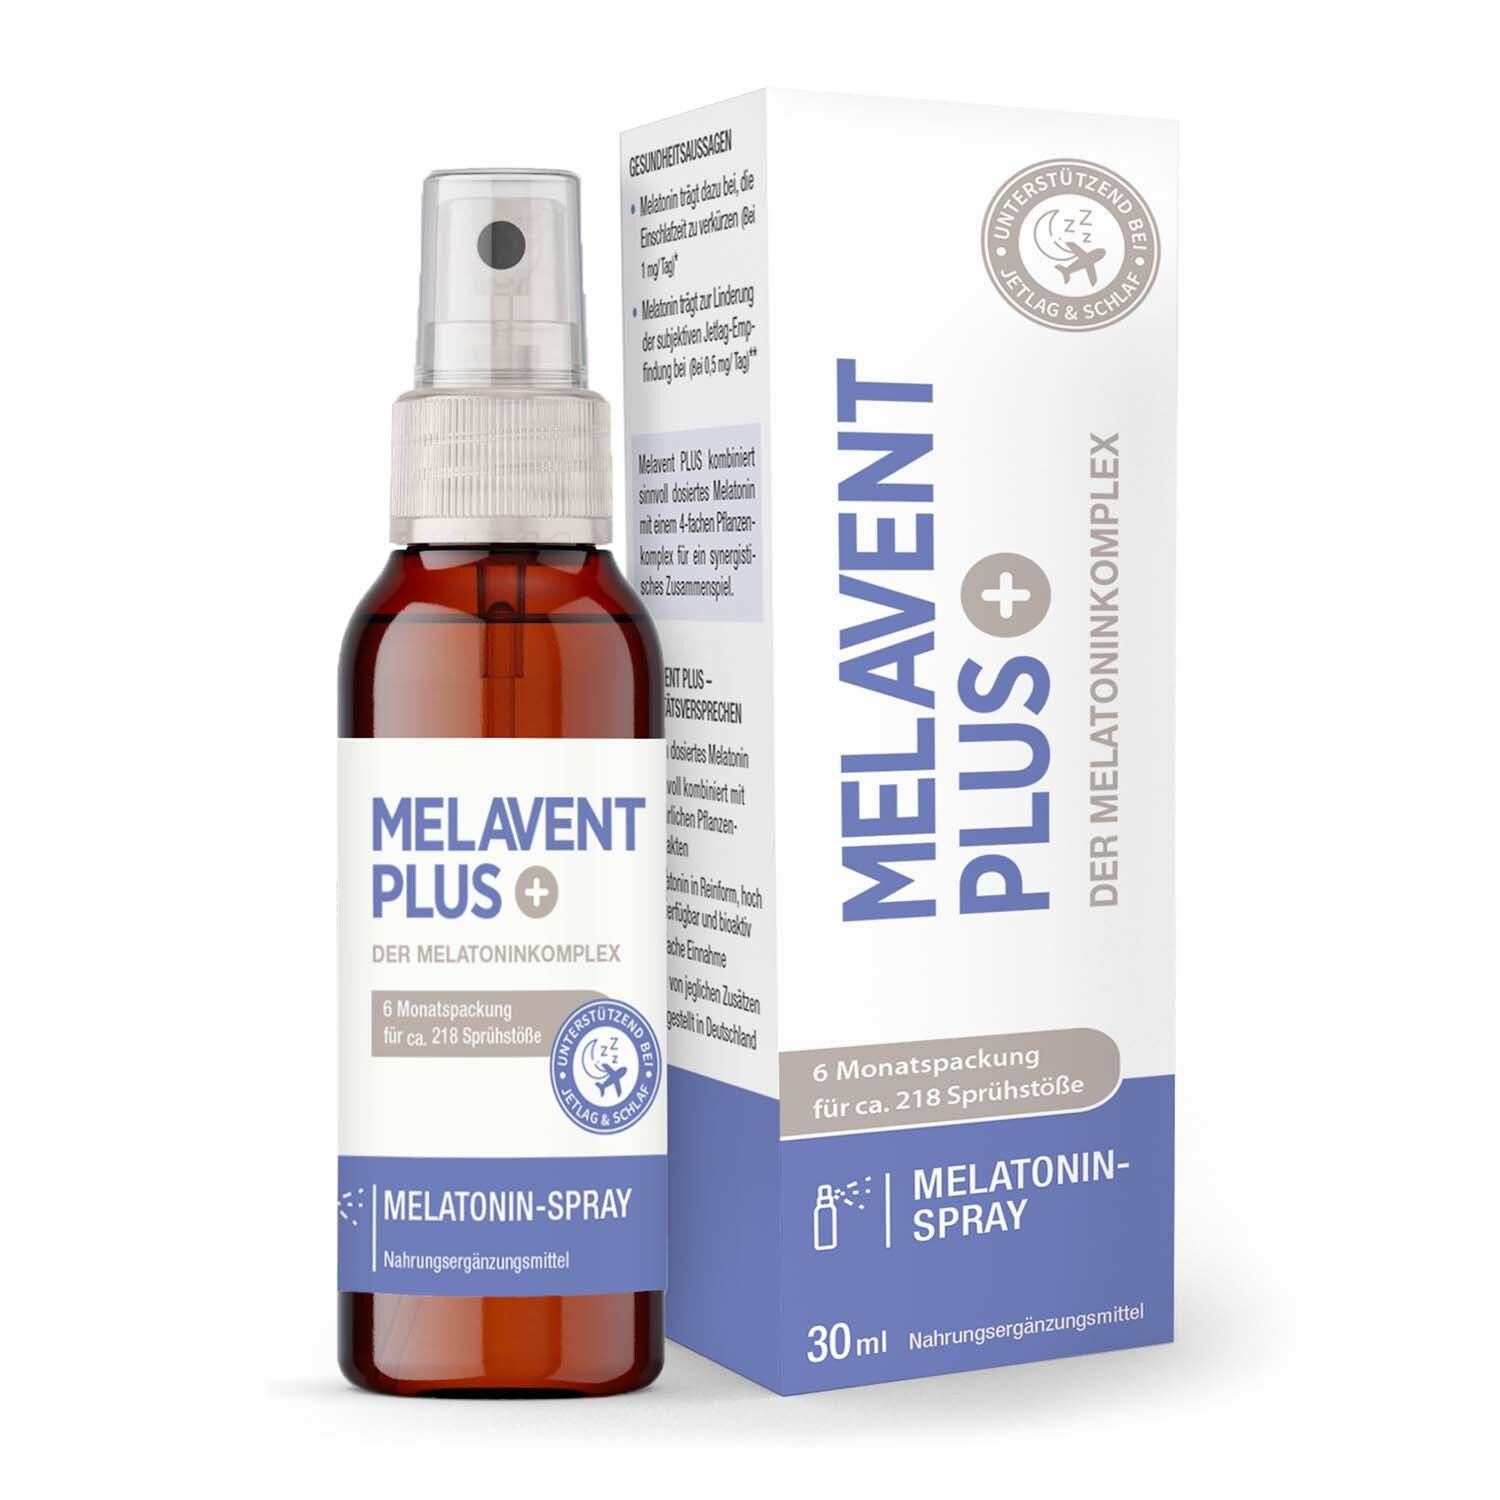 Melavent Plus - Melatonin sleep spray